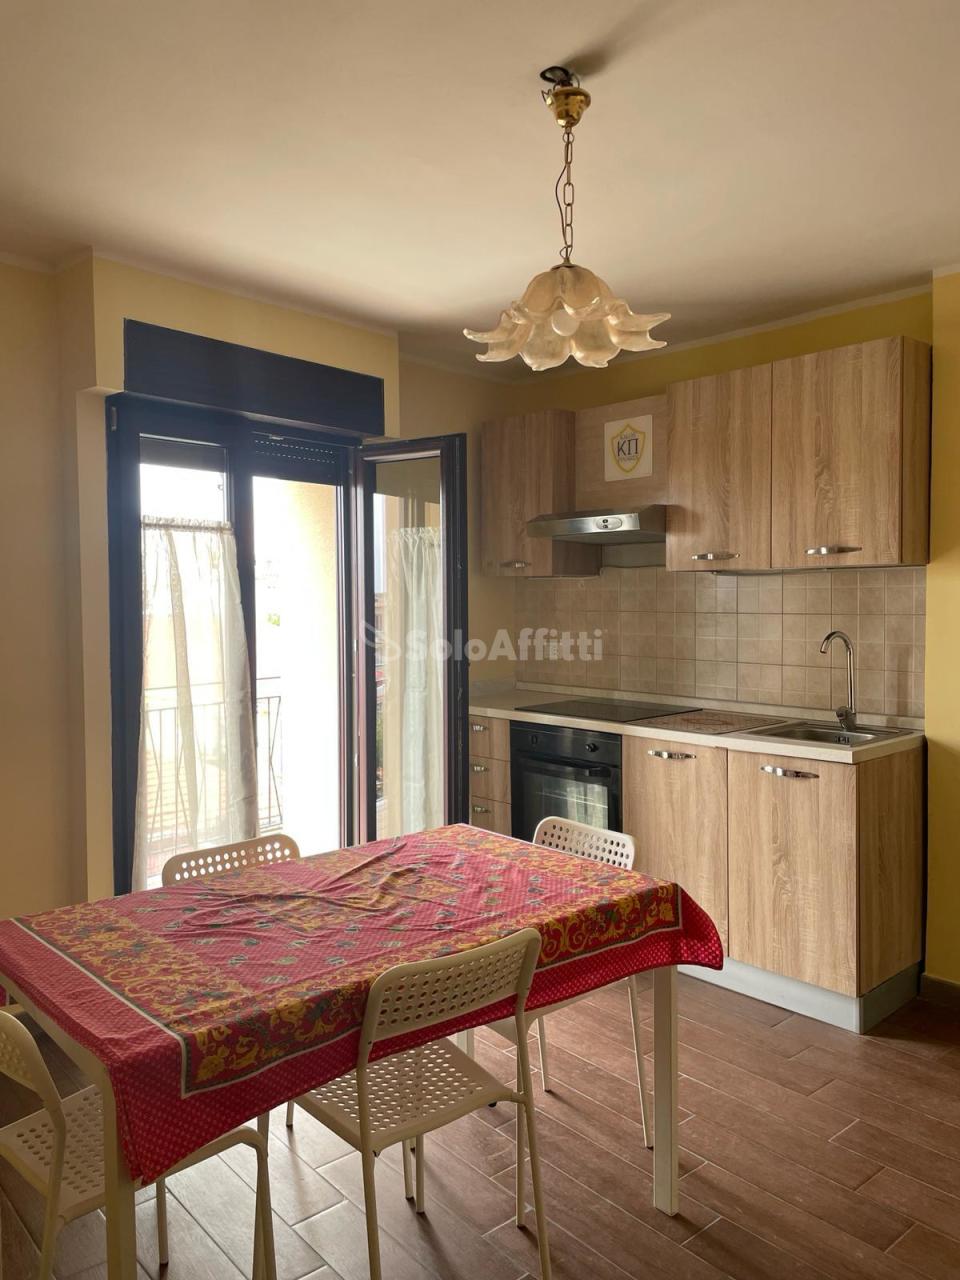 Appartamento in affitto a Reggio Calabria, 3 locali, prezzo € 350 | PortaleAgenzieImmobiliari.it